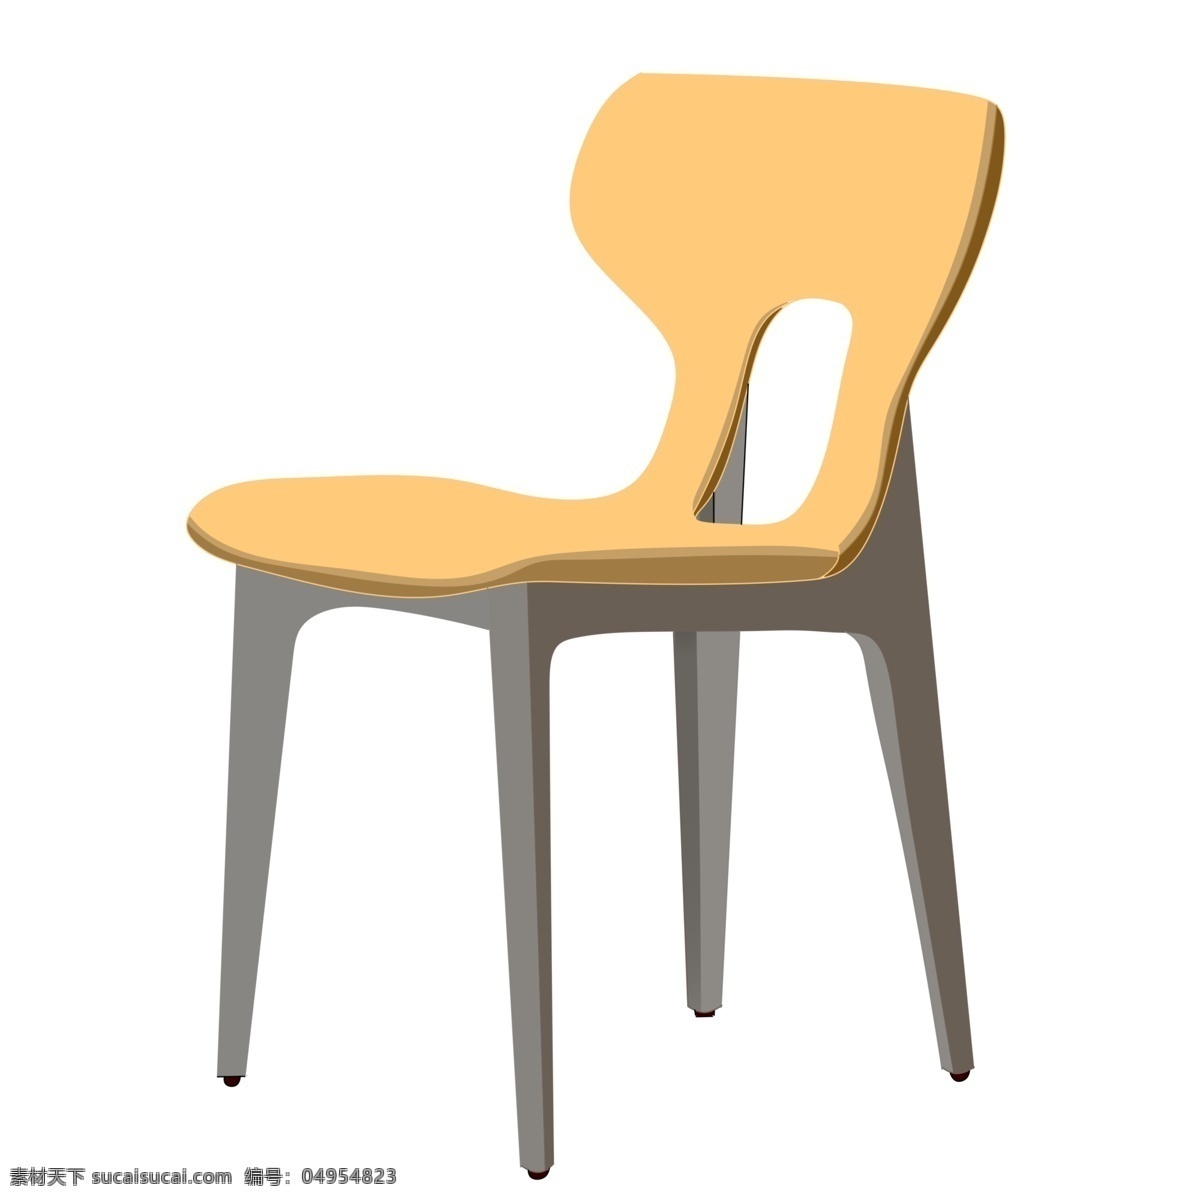 黄色 精美 座椅 插画 卡通椅子插画 黄色的椅子 椅子 精美的家具 家具 卡通桌椅插画 桌椅 黄色椅子